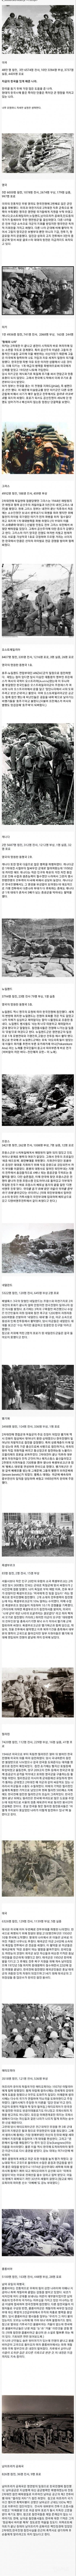 6.25 한국전쟁때 대한민국을 도와준 16개국  | 인스티즈